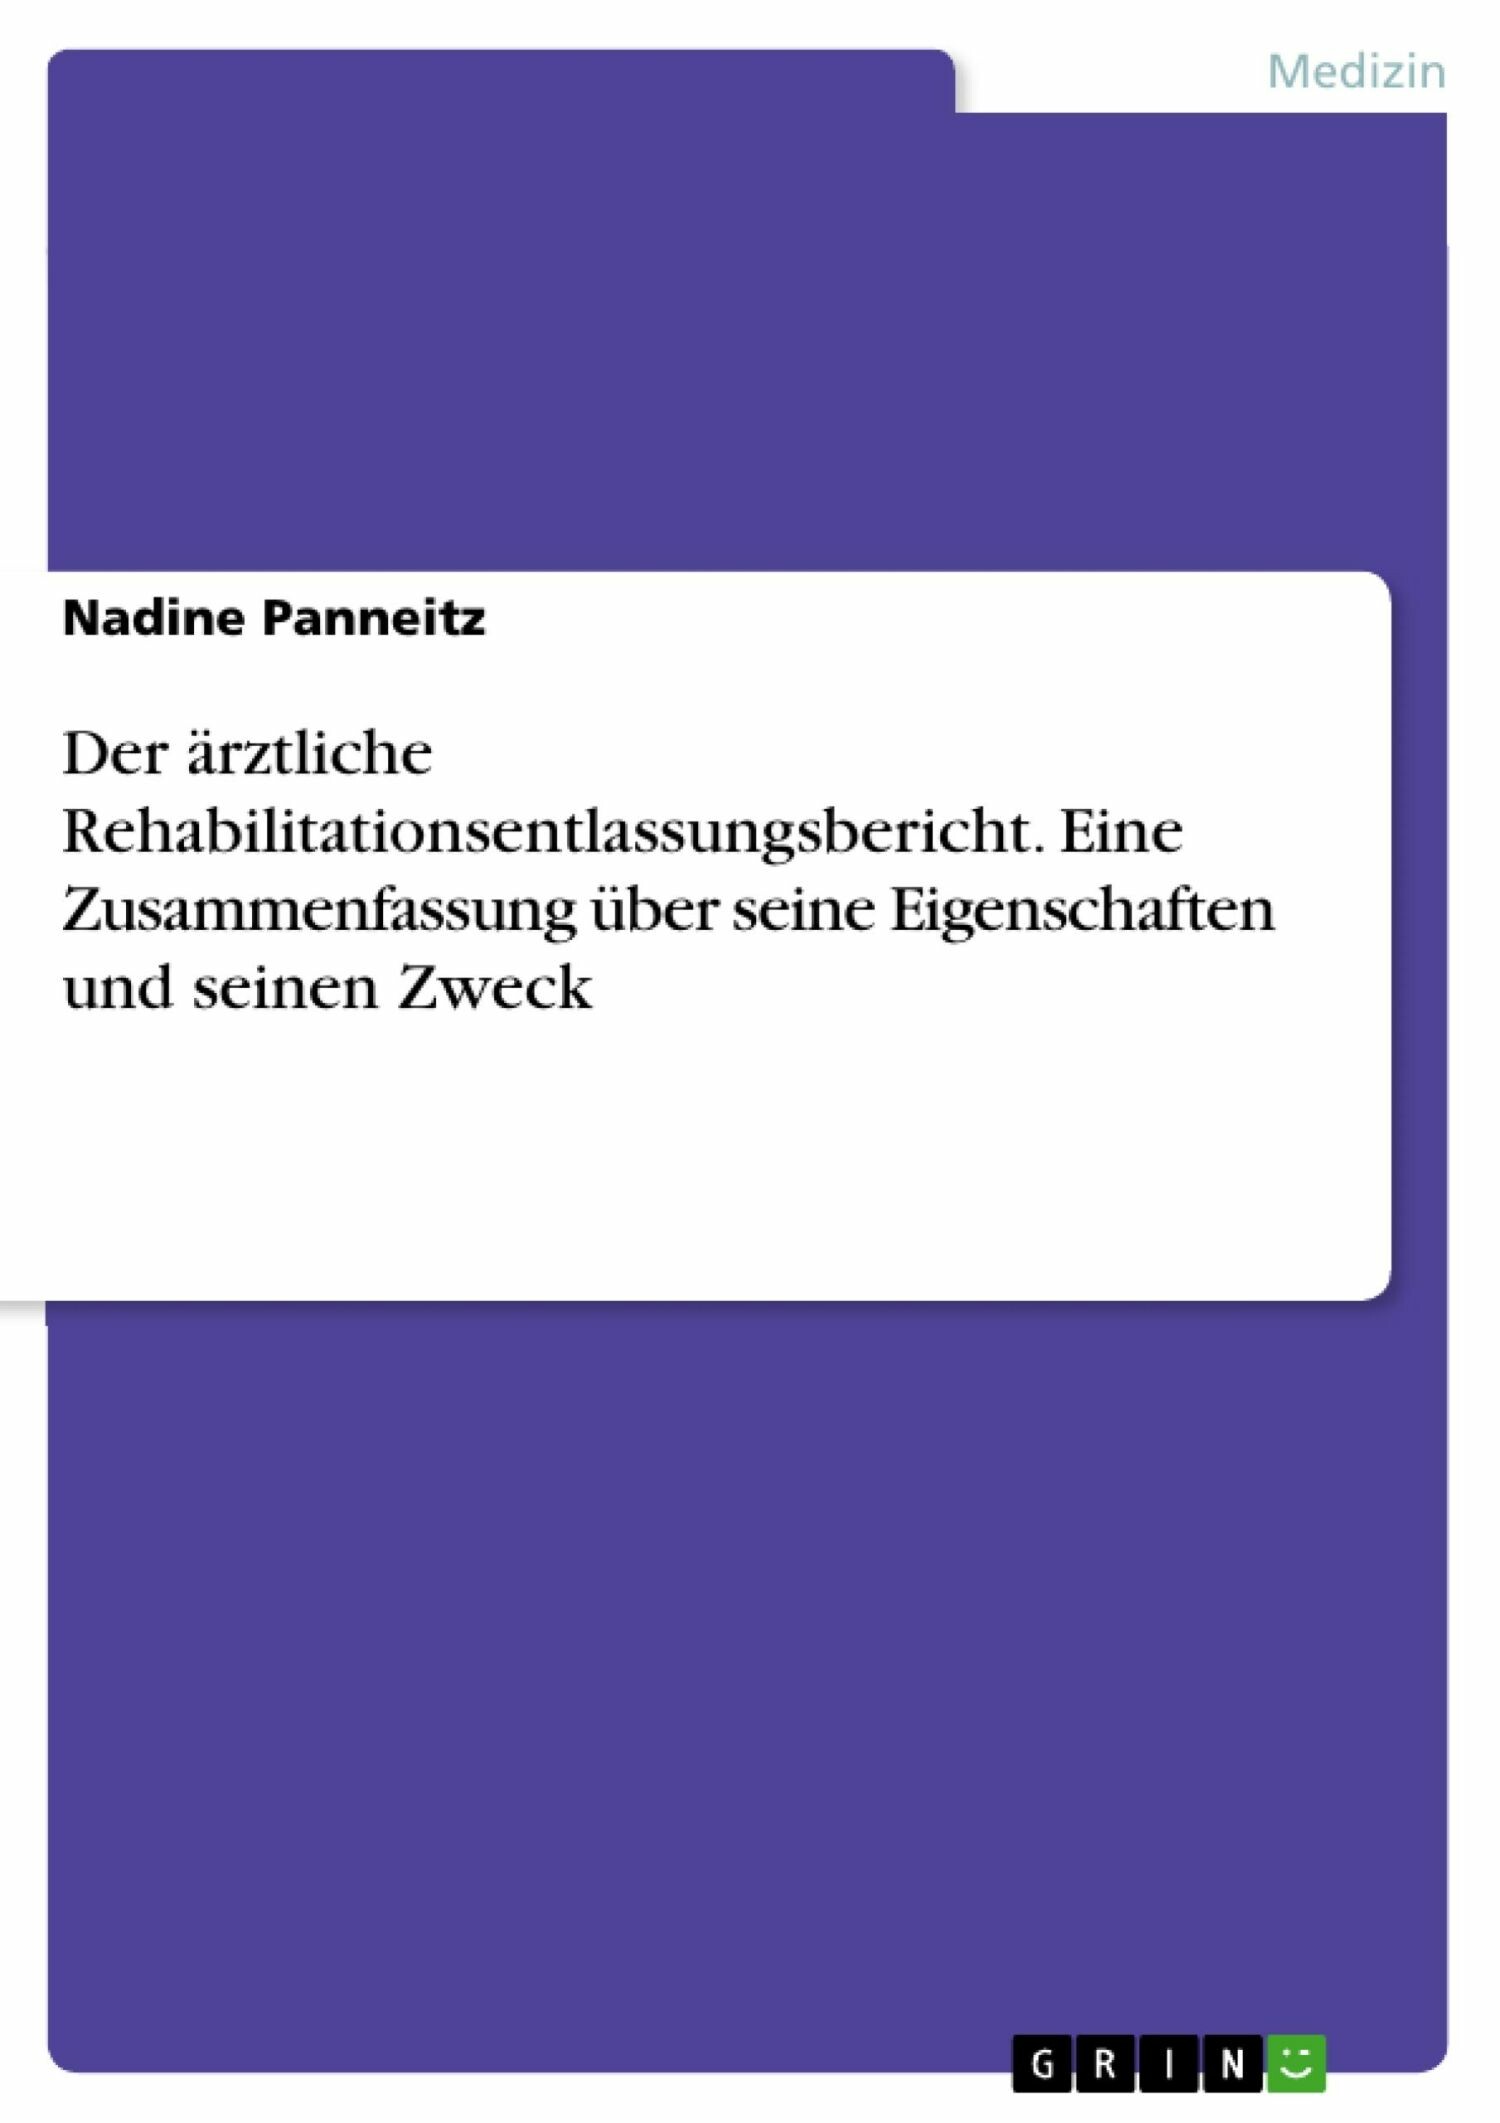 Der ärztliche Rehabilitationsentlassungsbericht. Eine Zusammenfassung über seine Eigenschaften und seinen Zweck